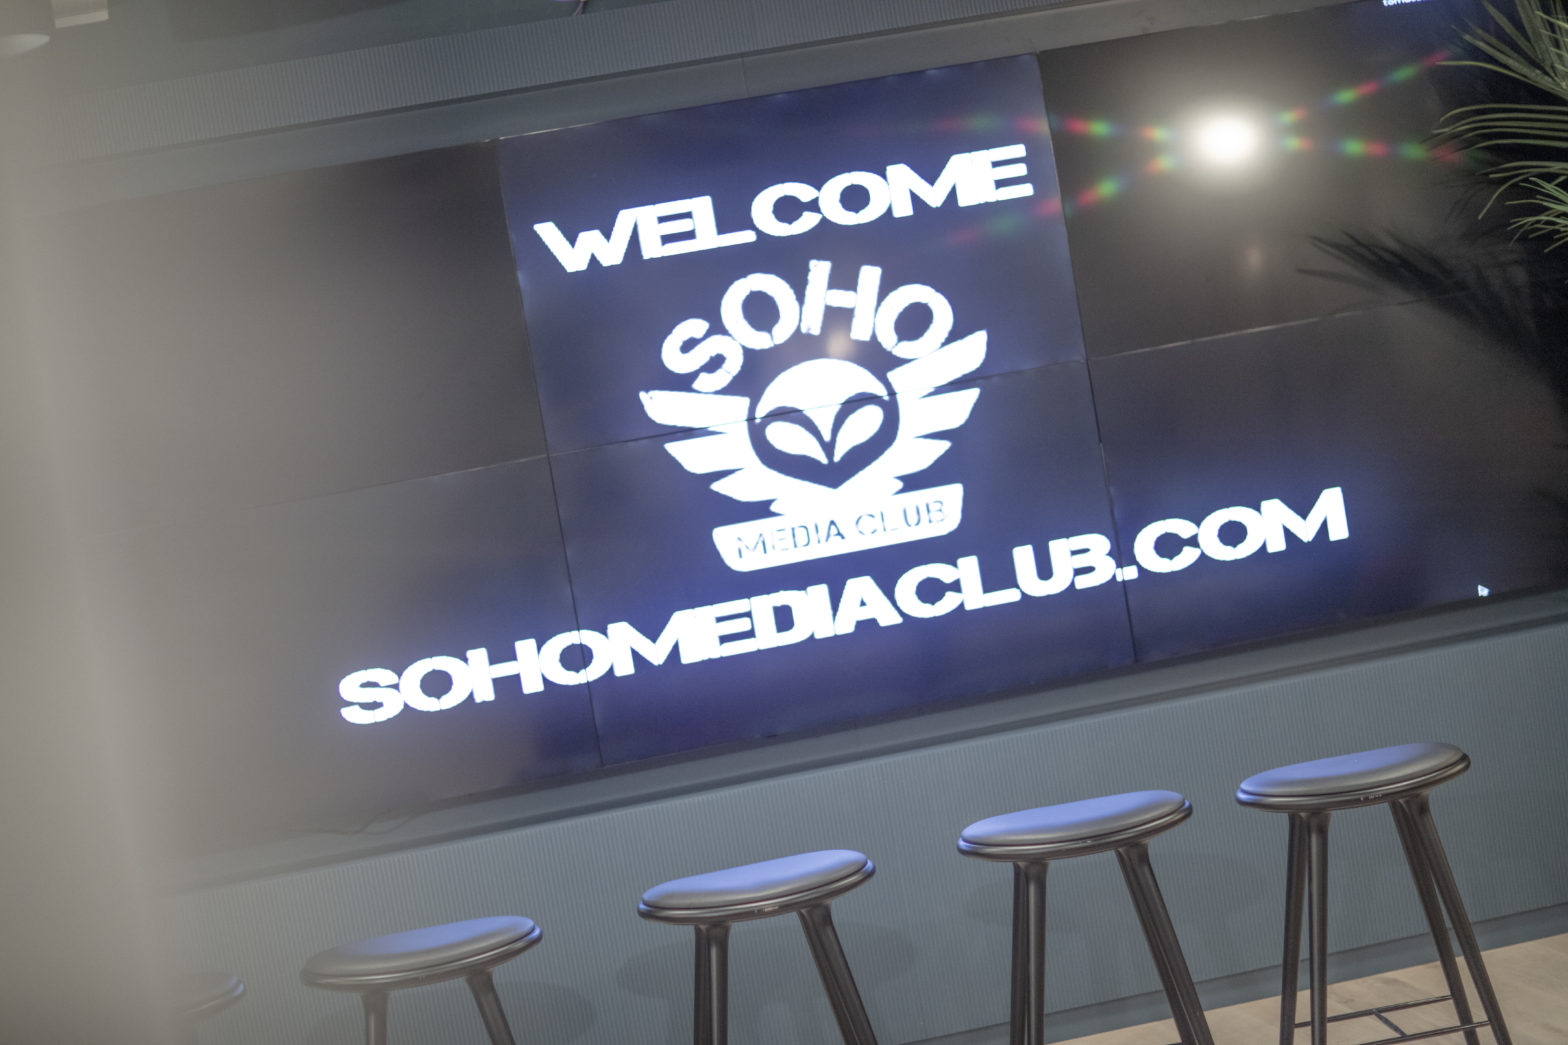 Soho media club